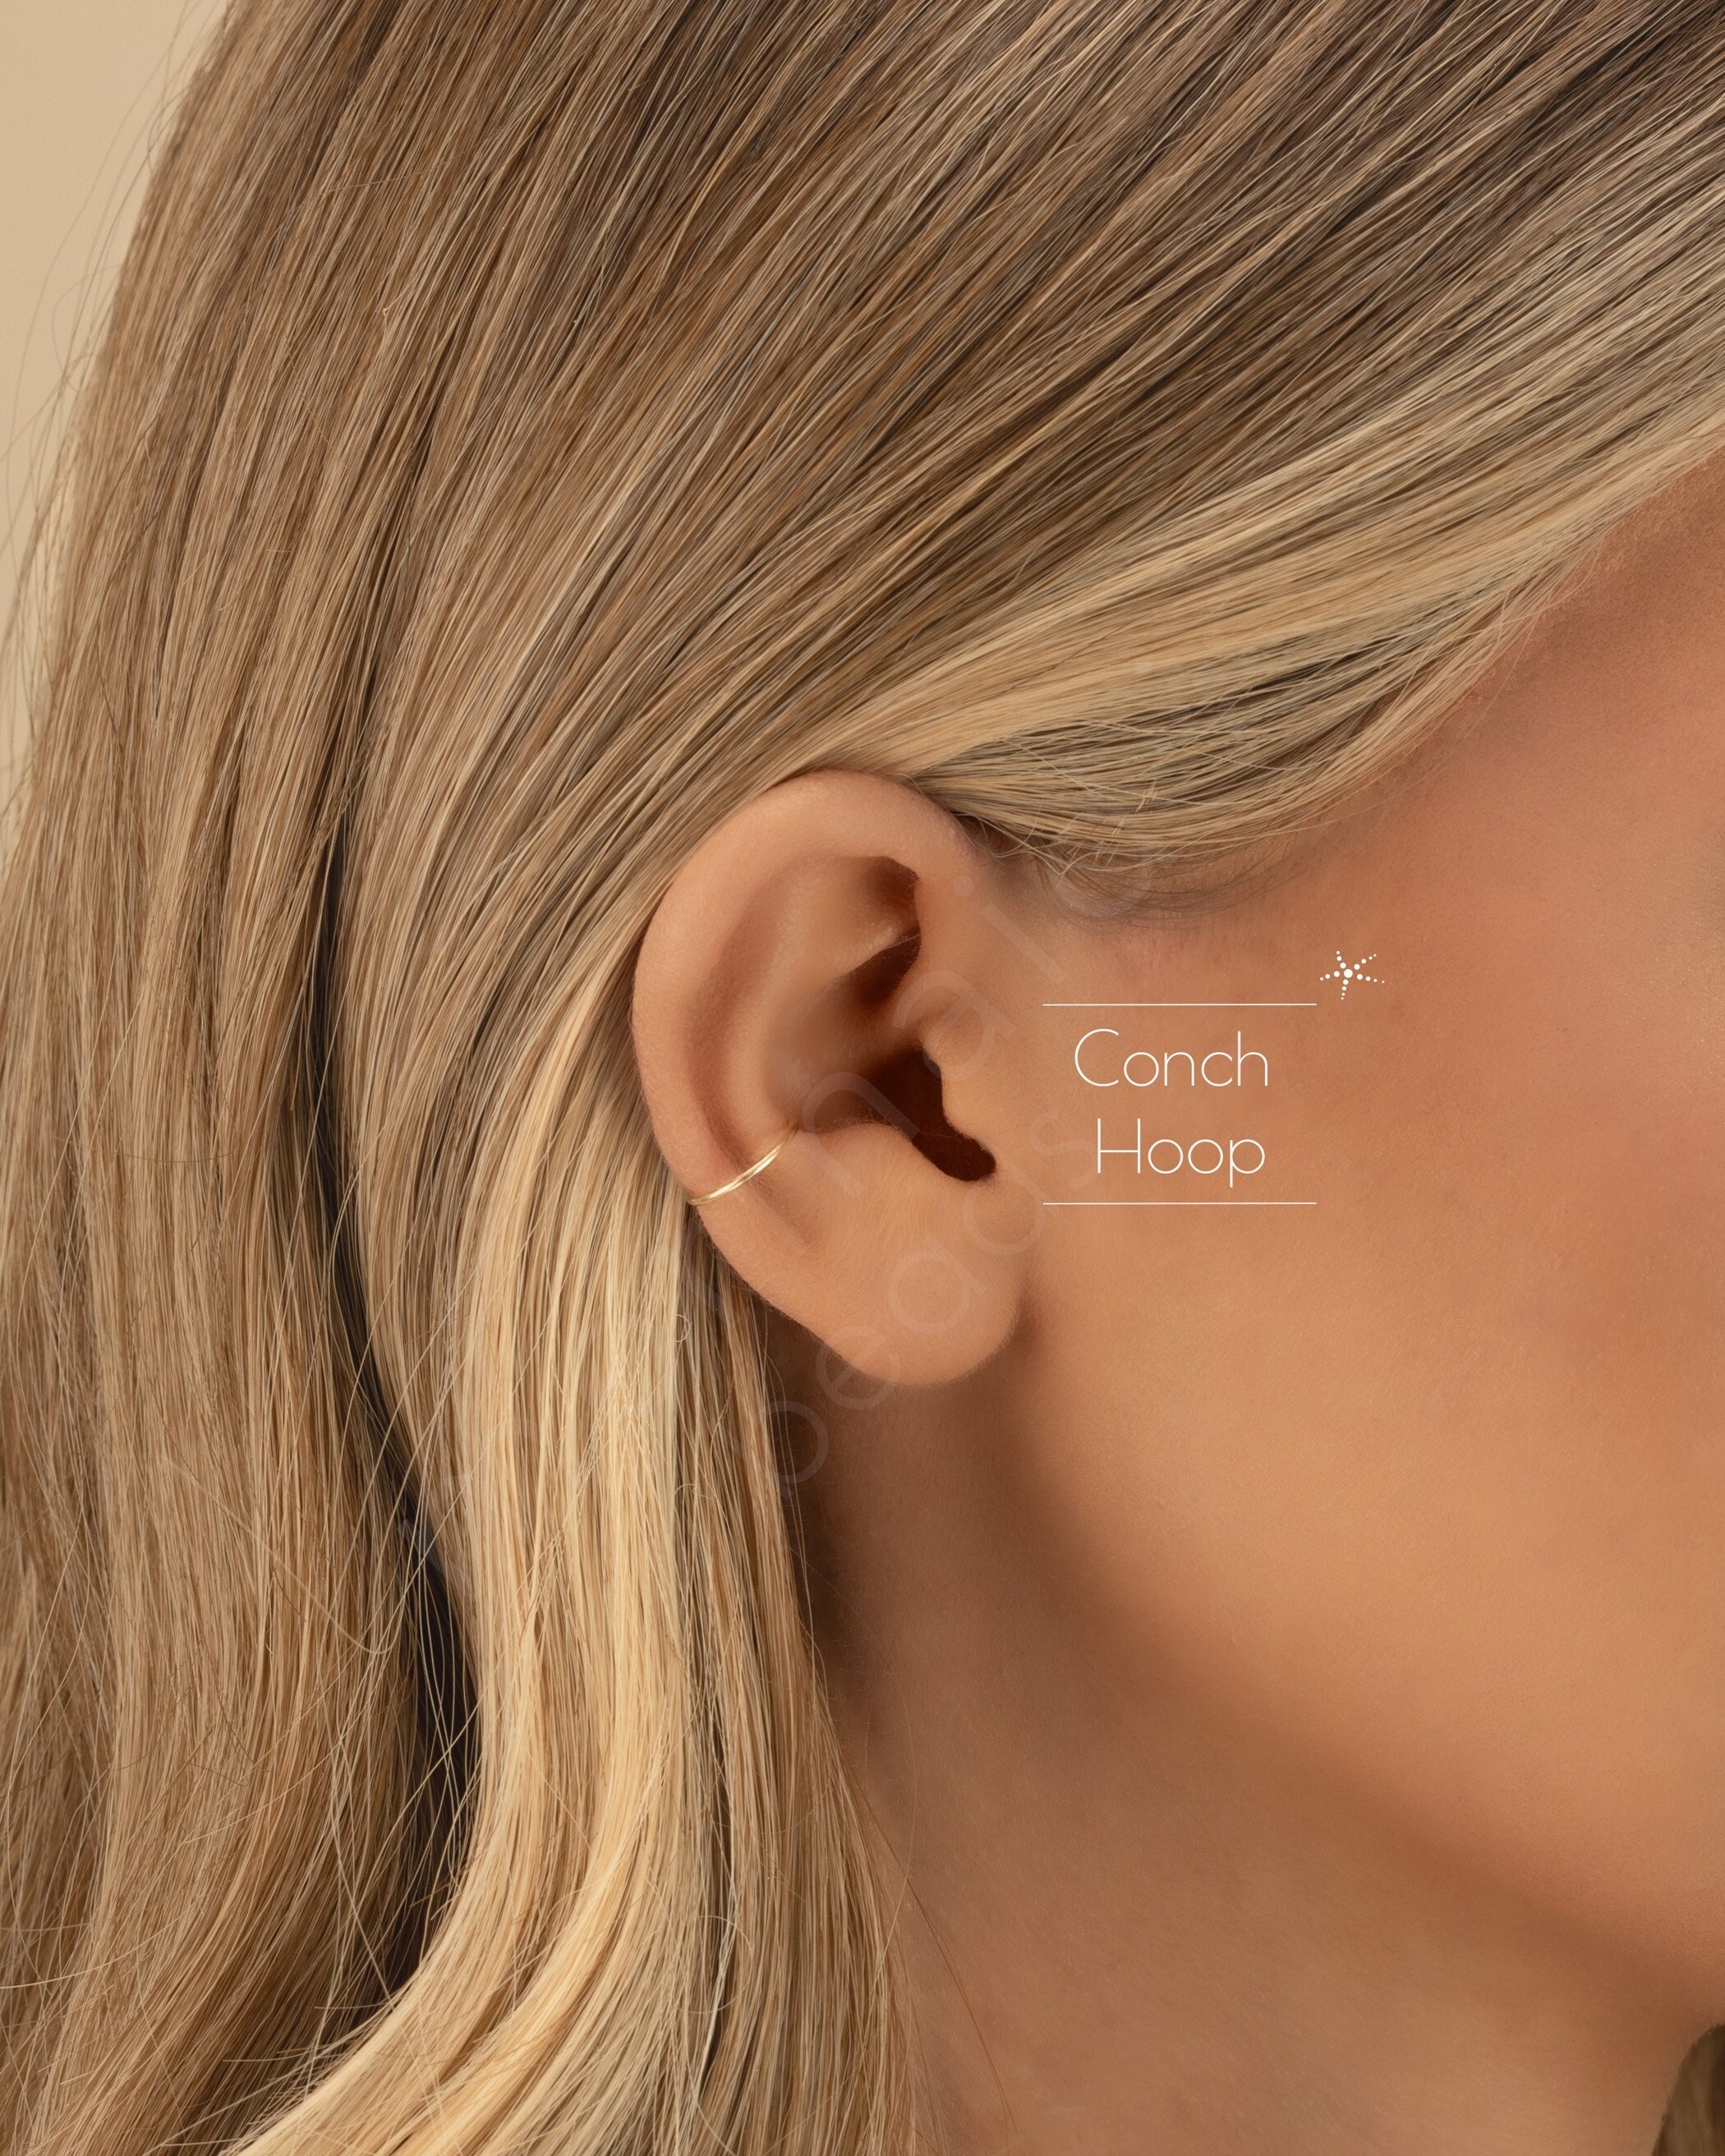 Conch Hoop Earring Snug Orbital Hoop Earrings 8mm 9mm 10mm